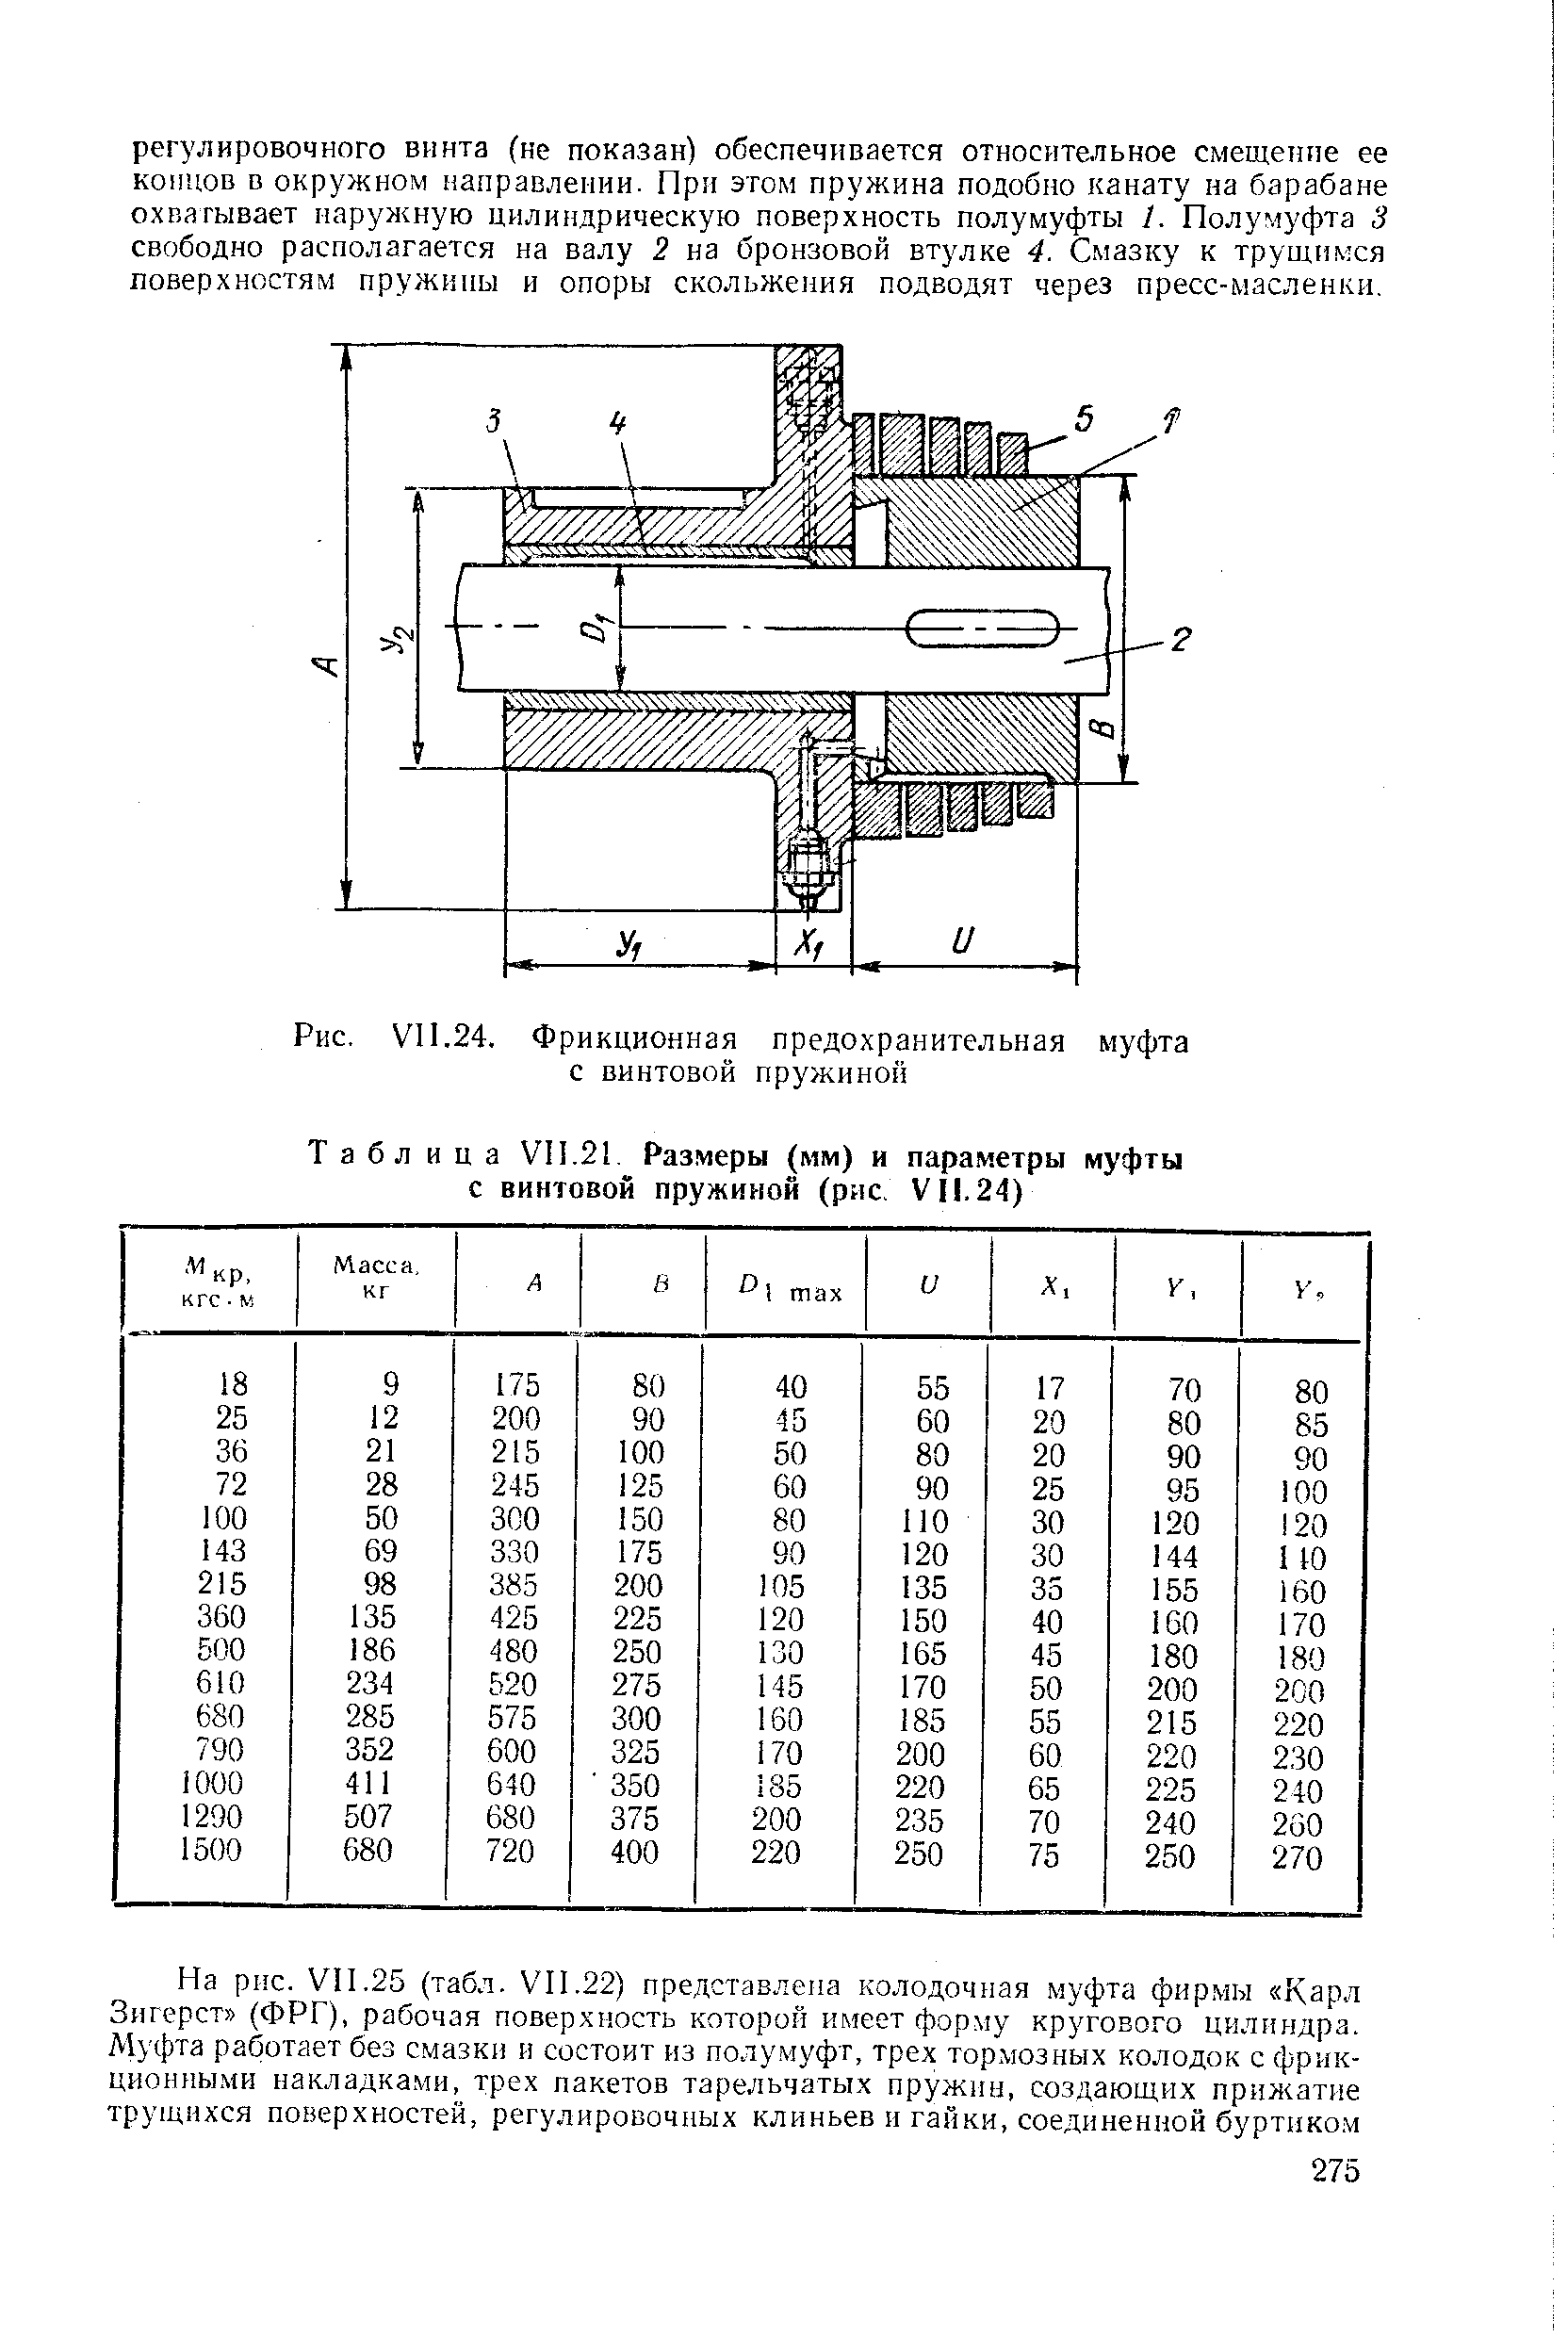 Таблица VII.21 Размеры (мм) и параметры муфты с винтовой пружиной (рис, VII. 24)
